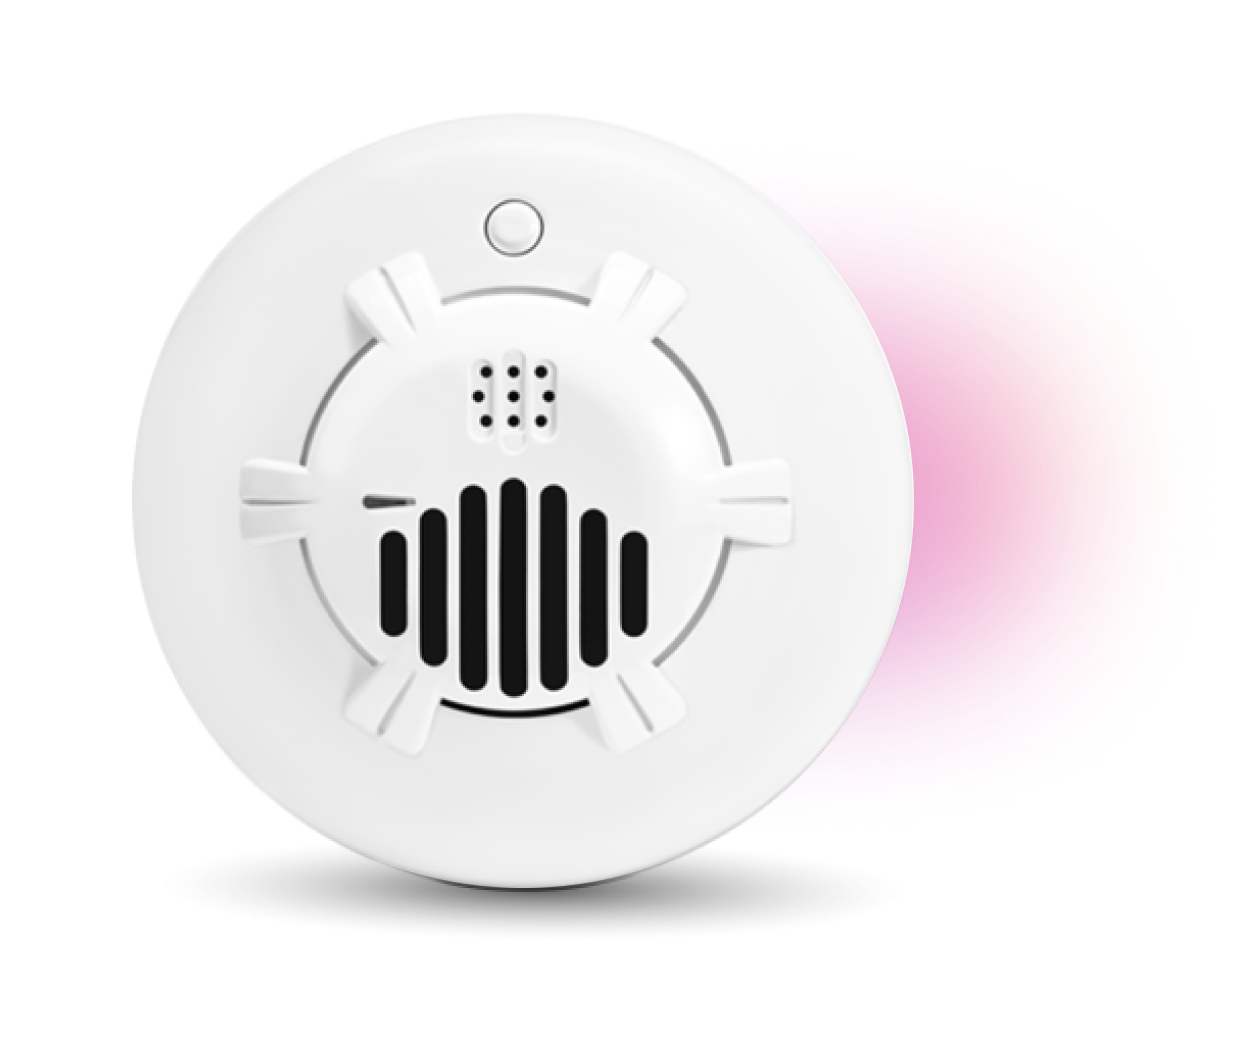 Smart Carbon Monoxide Detector